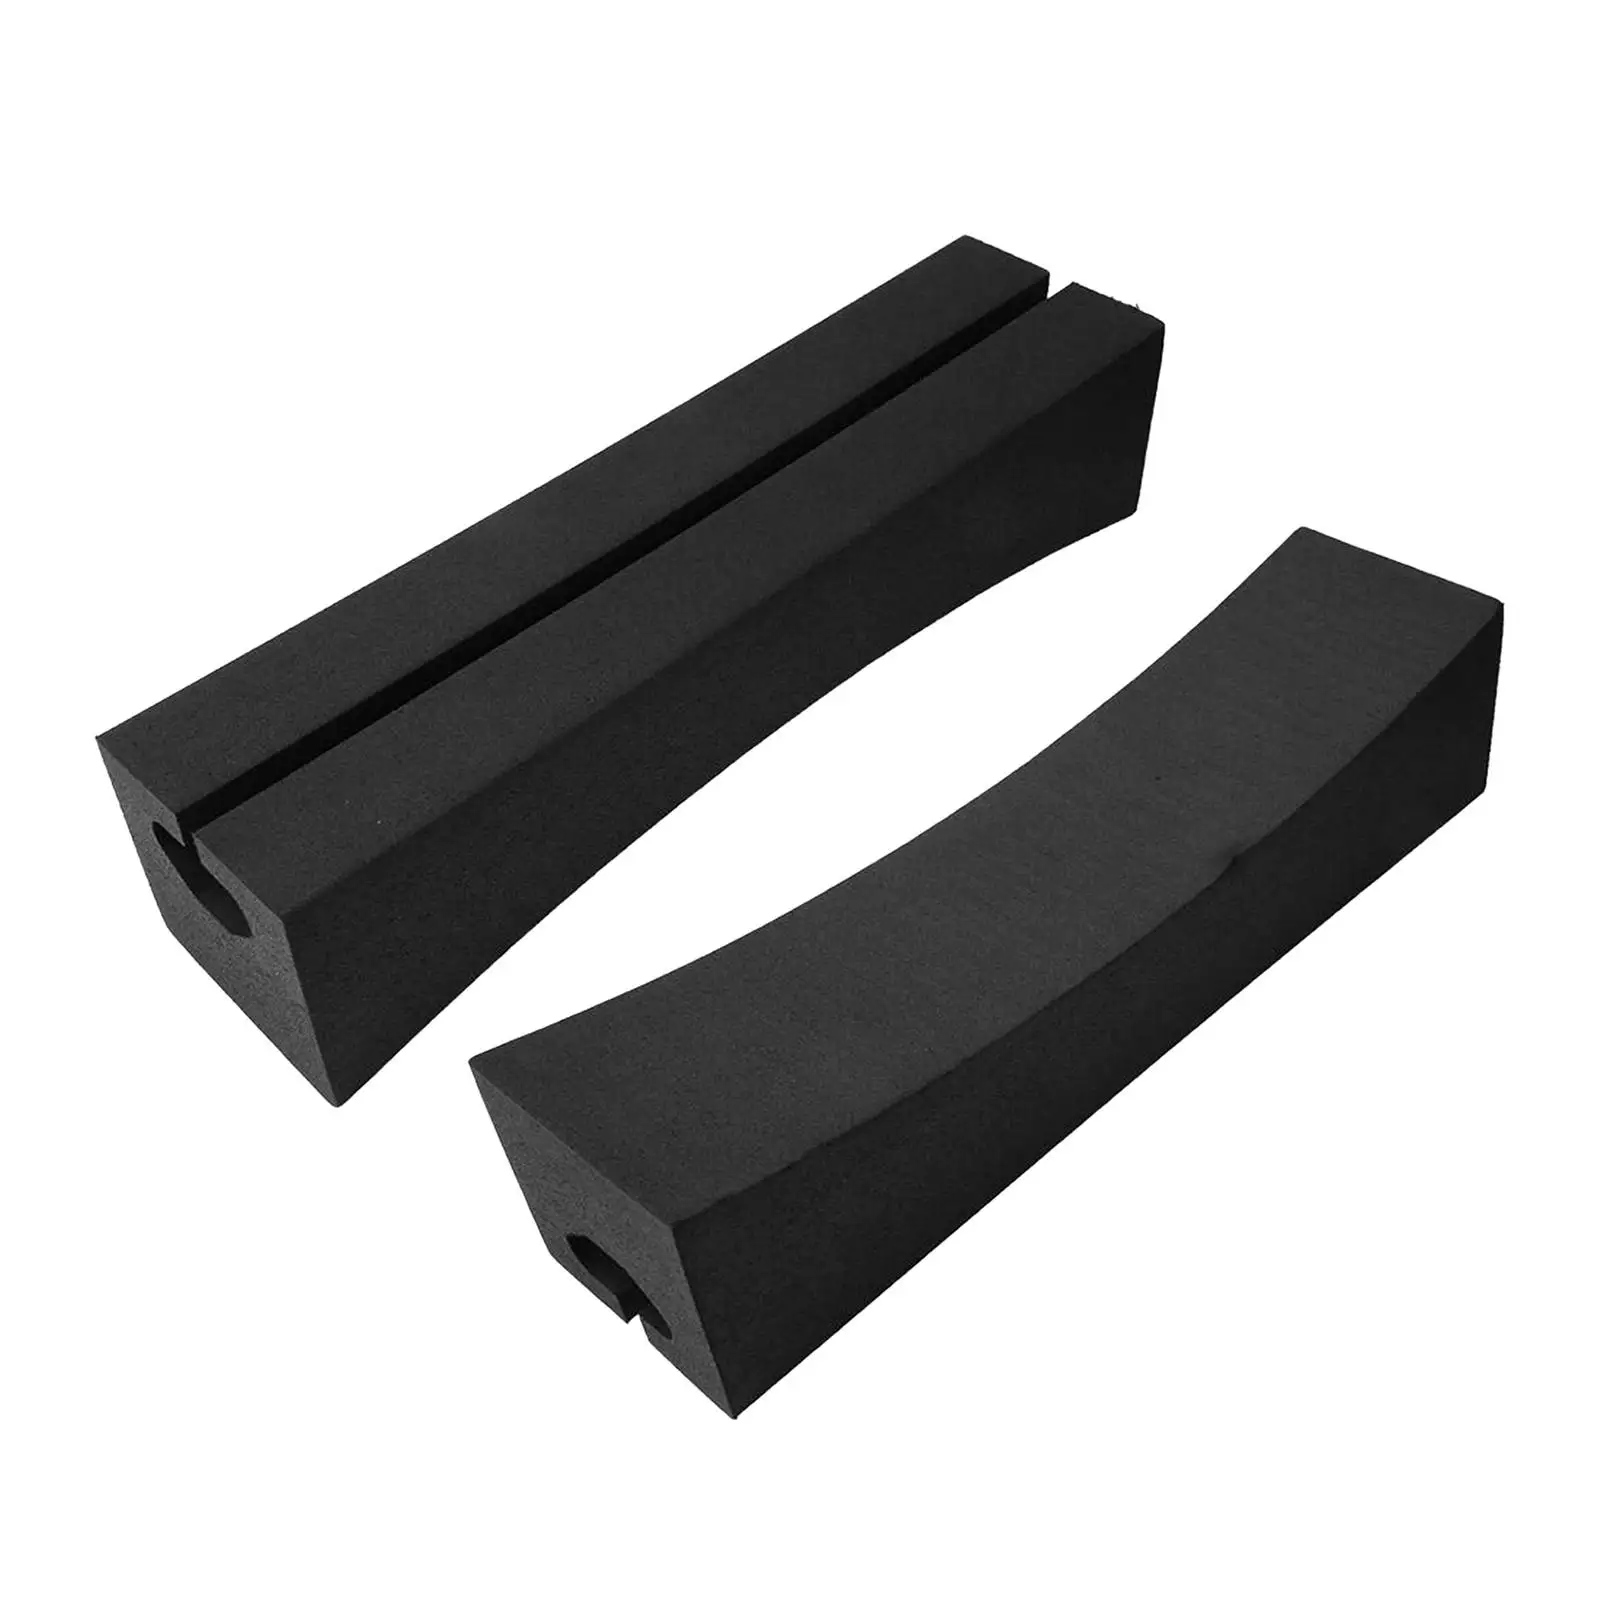 1 Set Car Roof Rack EVA Standard Paddle Soft Black for Traveling Sports Car